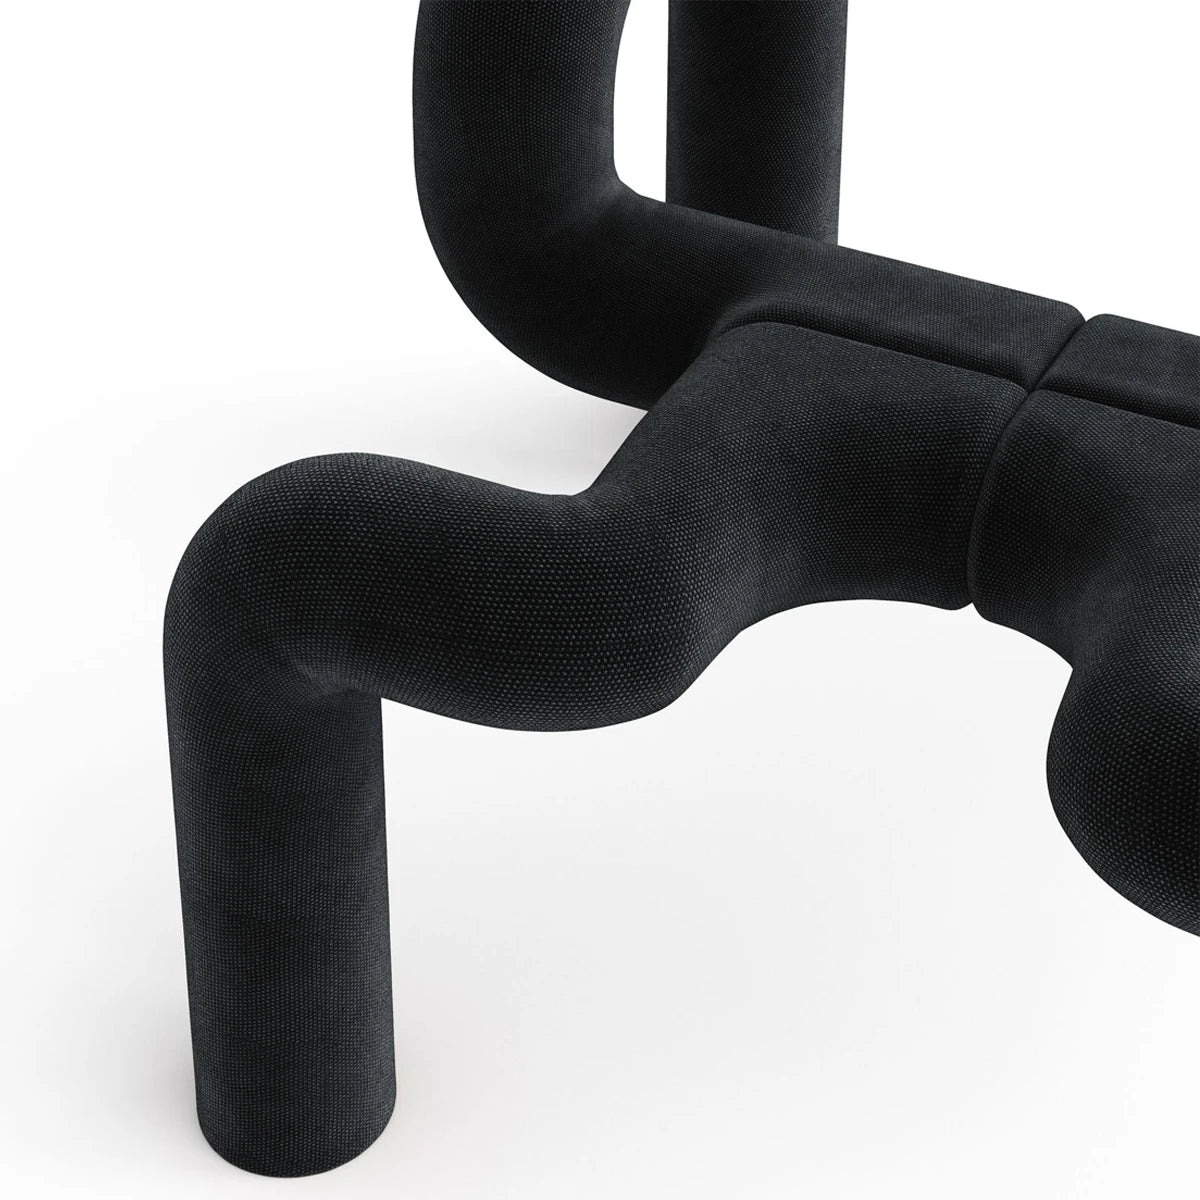 Ekstrem Chair by Varier - Black - View 1